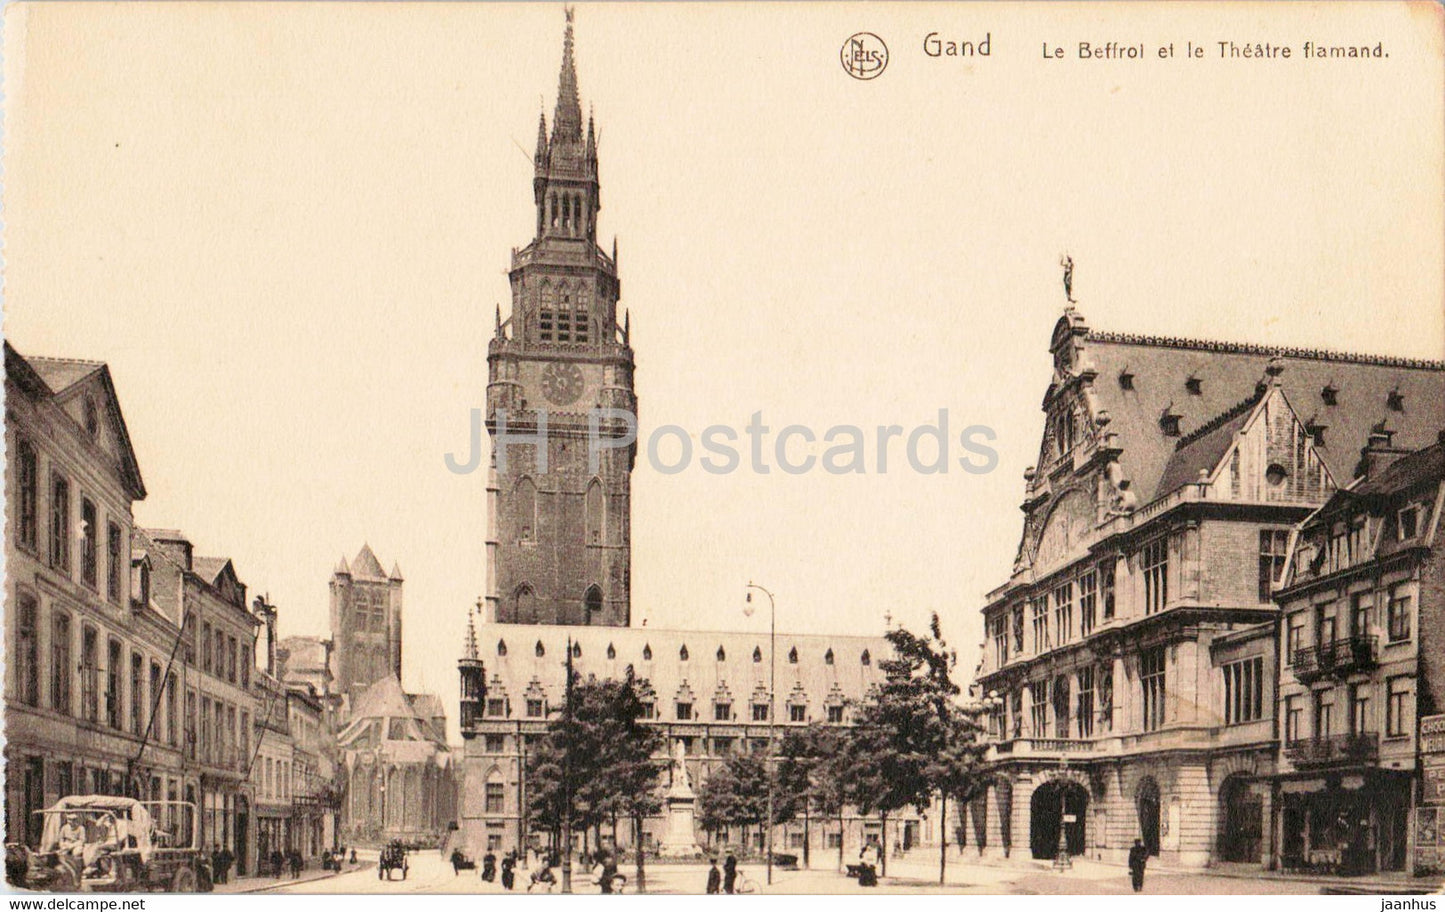 Gent - Gand - Le Beffroi et le Theatre Flamand - old postcard - Belgium - unused - JH Postcards